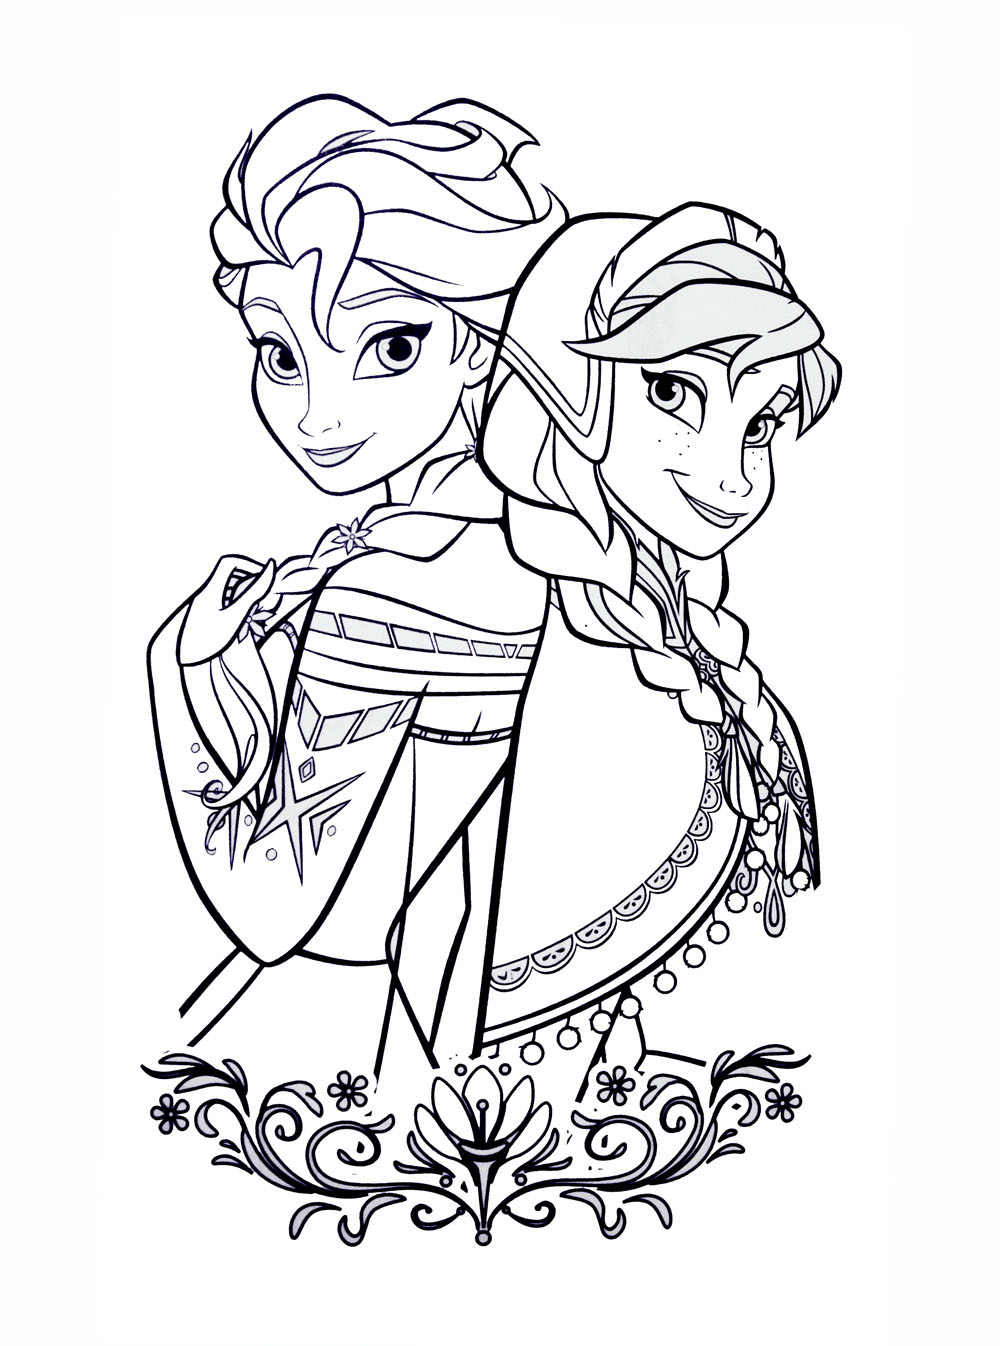 Tranh tô màu Elsa và Anna